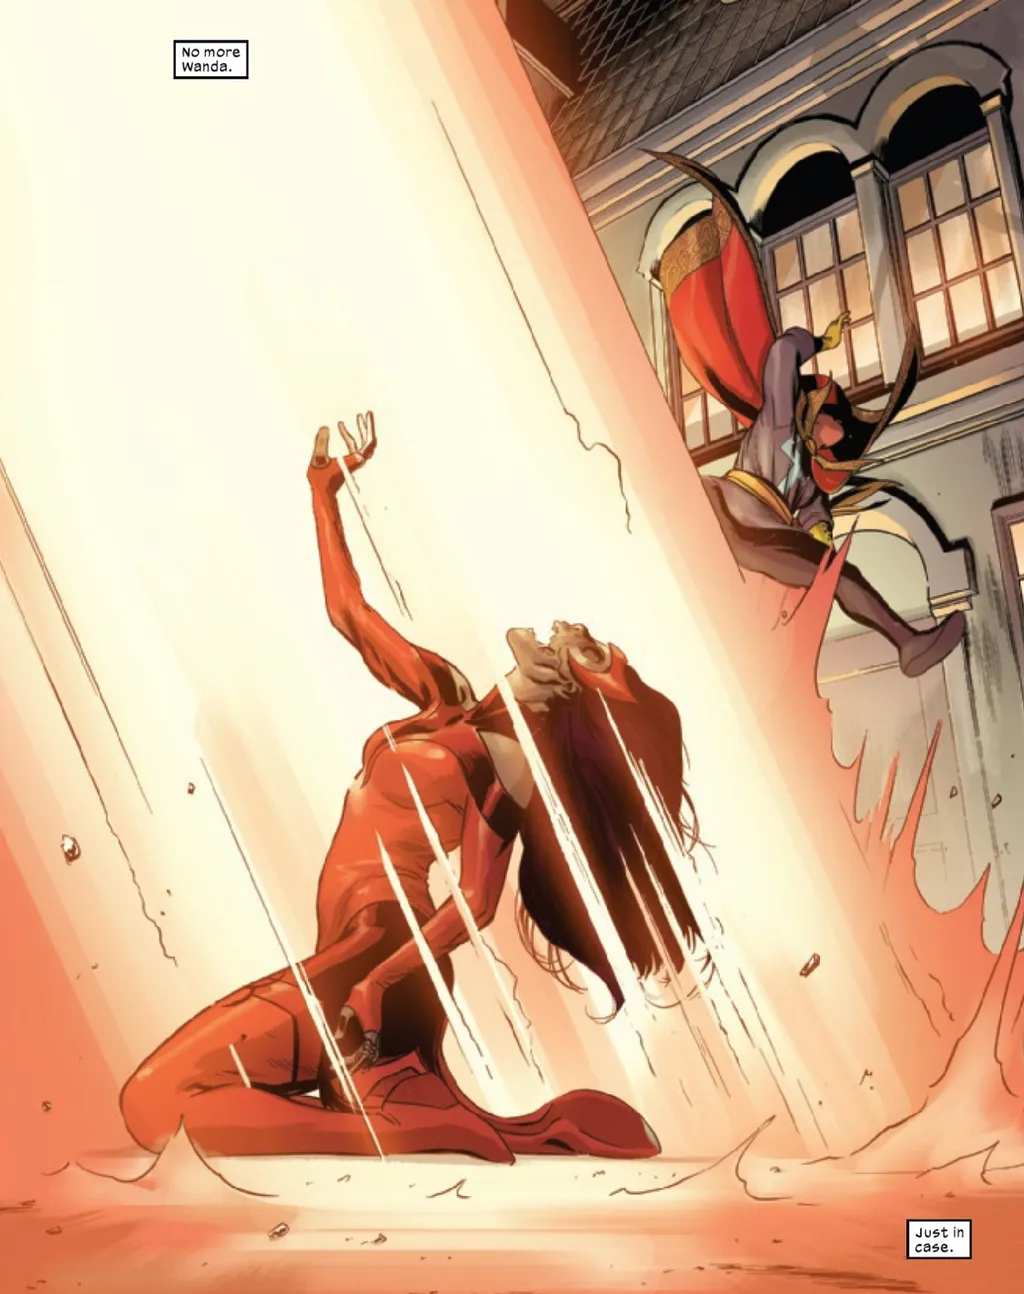 A Feiticeira Escarlate é varrida pelo Senhor Sinistro com direito a "Chega de Wanda" (Imagem: Reprodução/Marvel Comics)